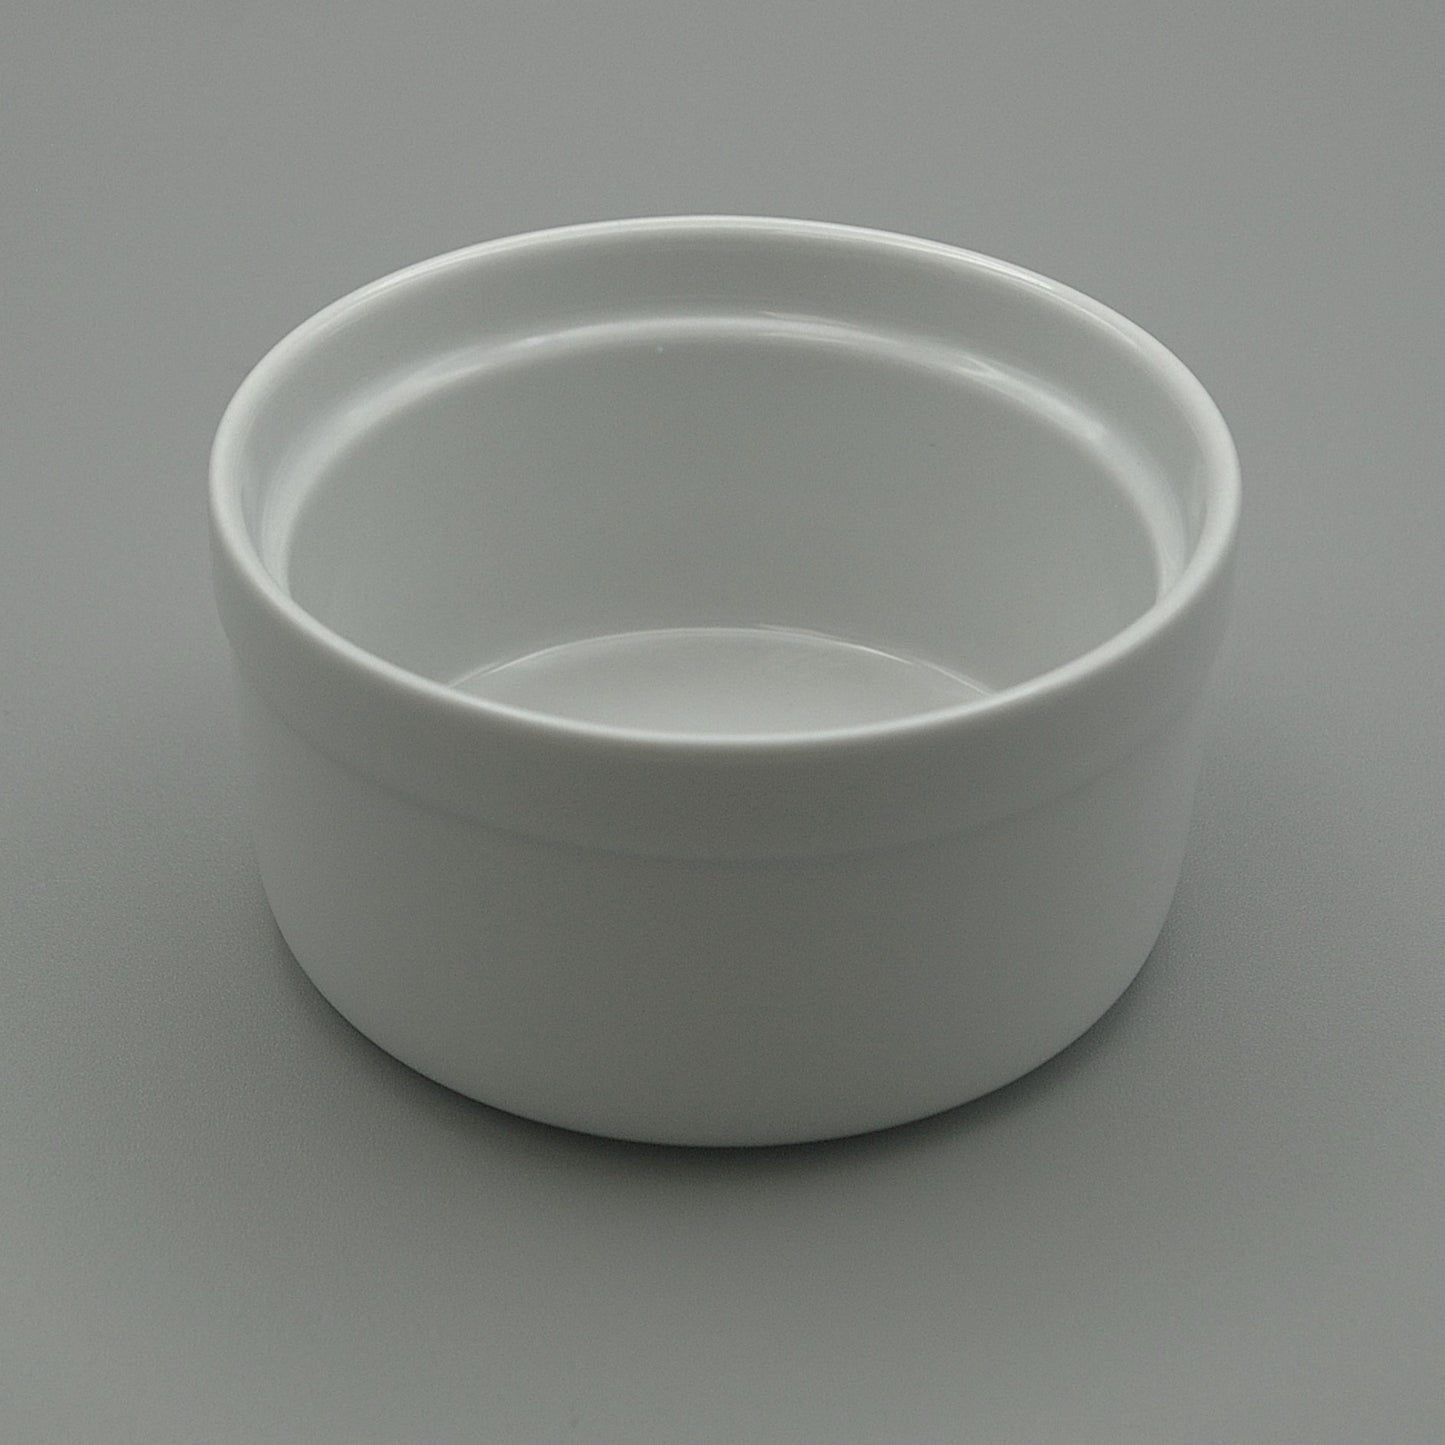 RSBCW-08 - Porcelain 8oz Flat Bottom White Retherma Soup Bowl